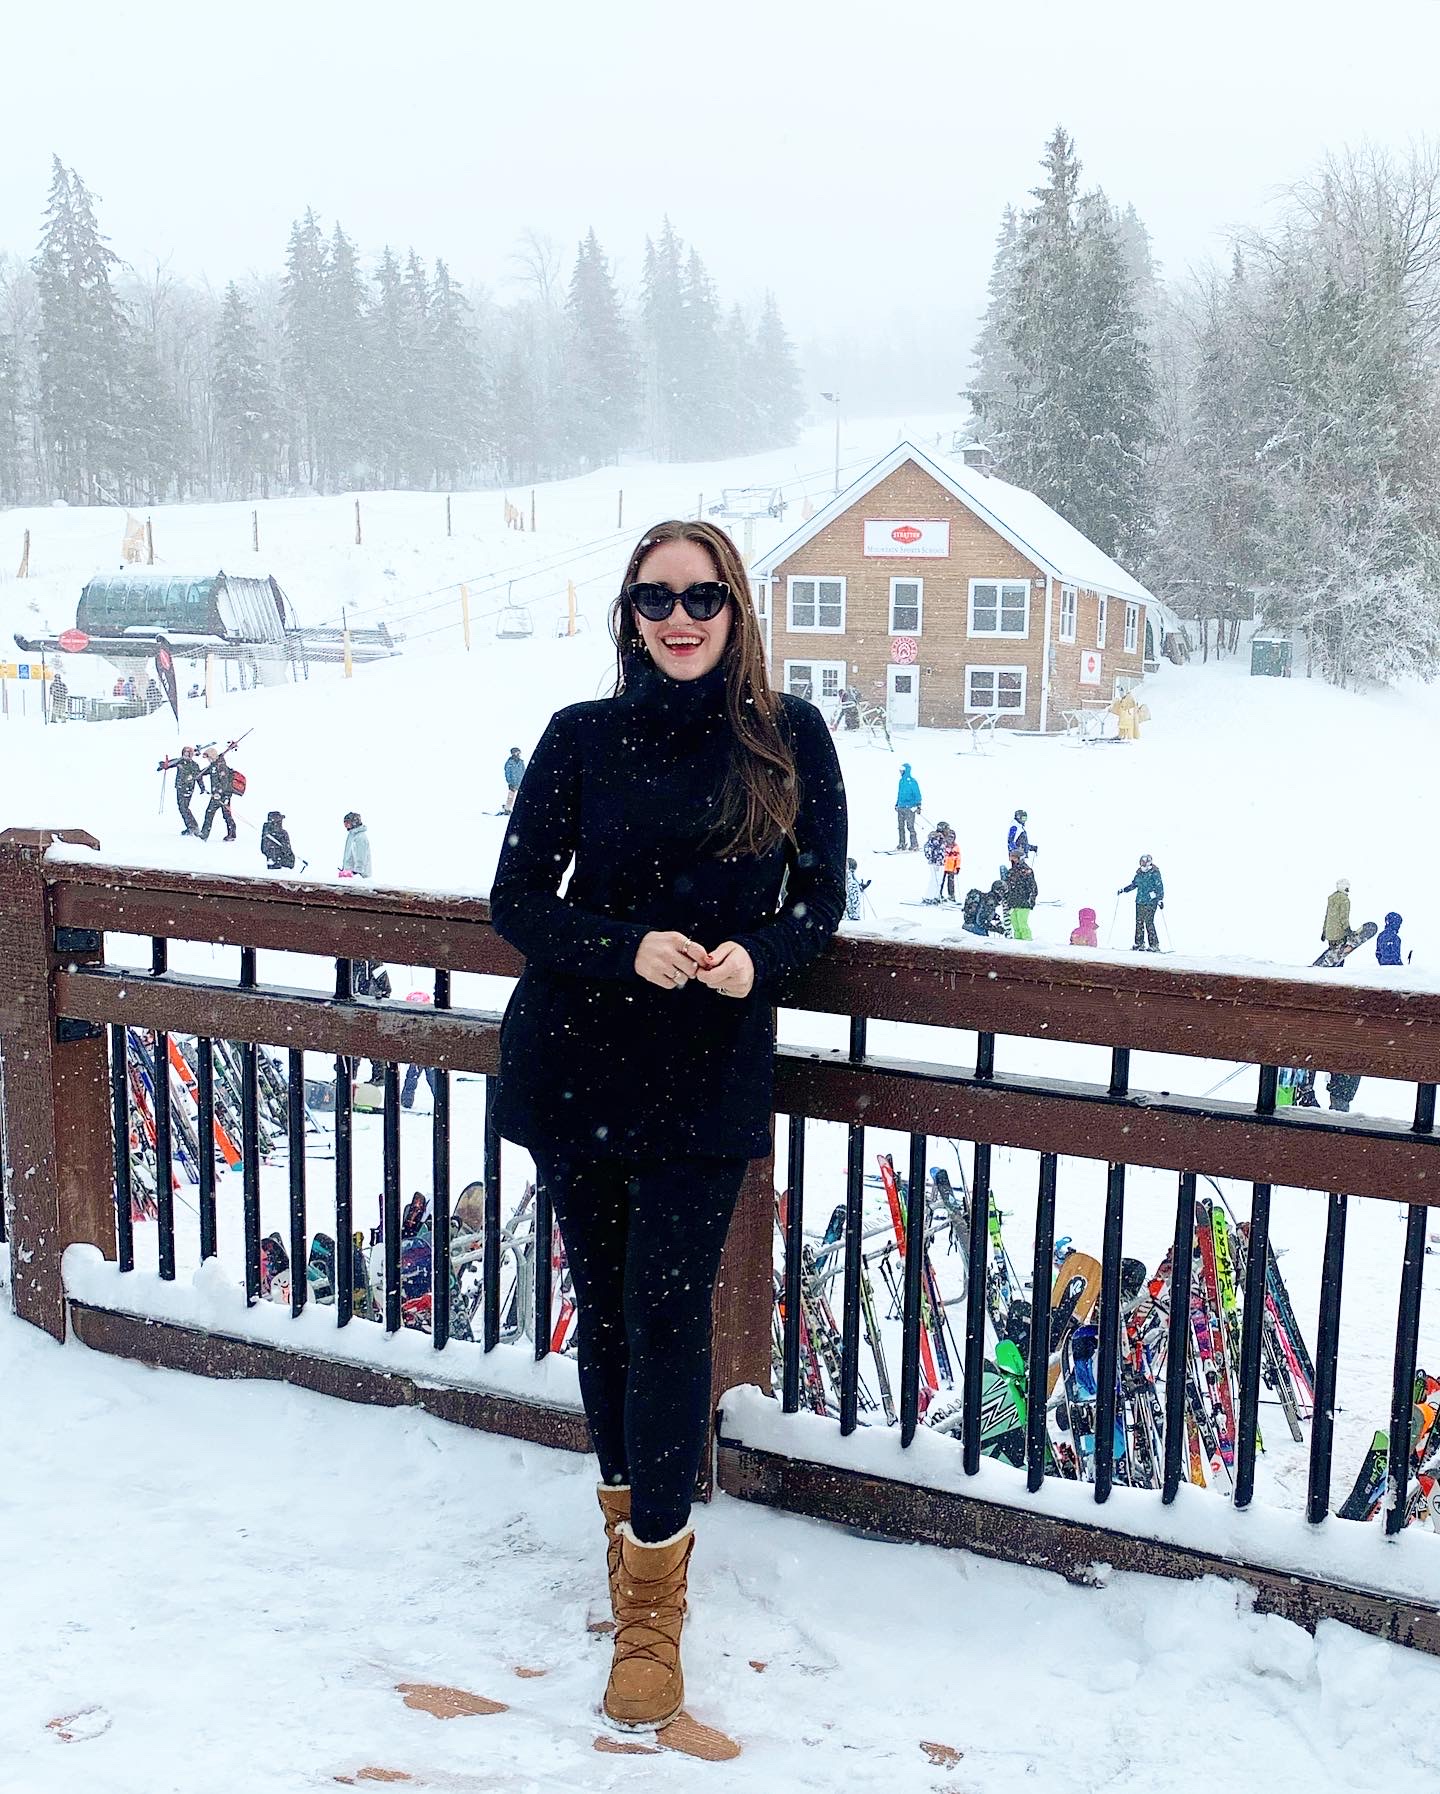 Weekend Update: February 12 snow ski trip 2020